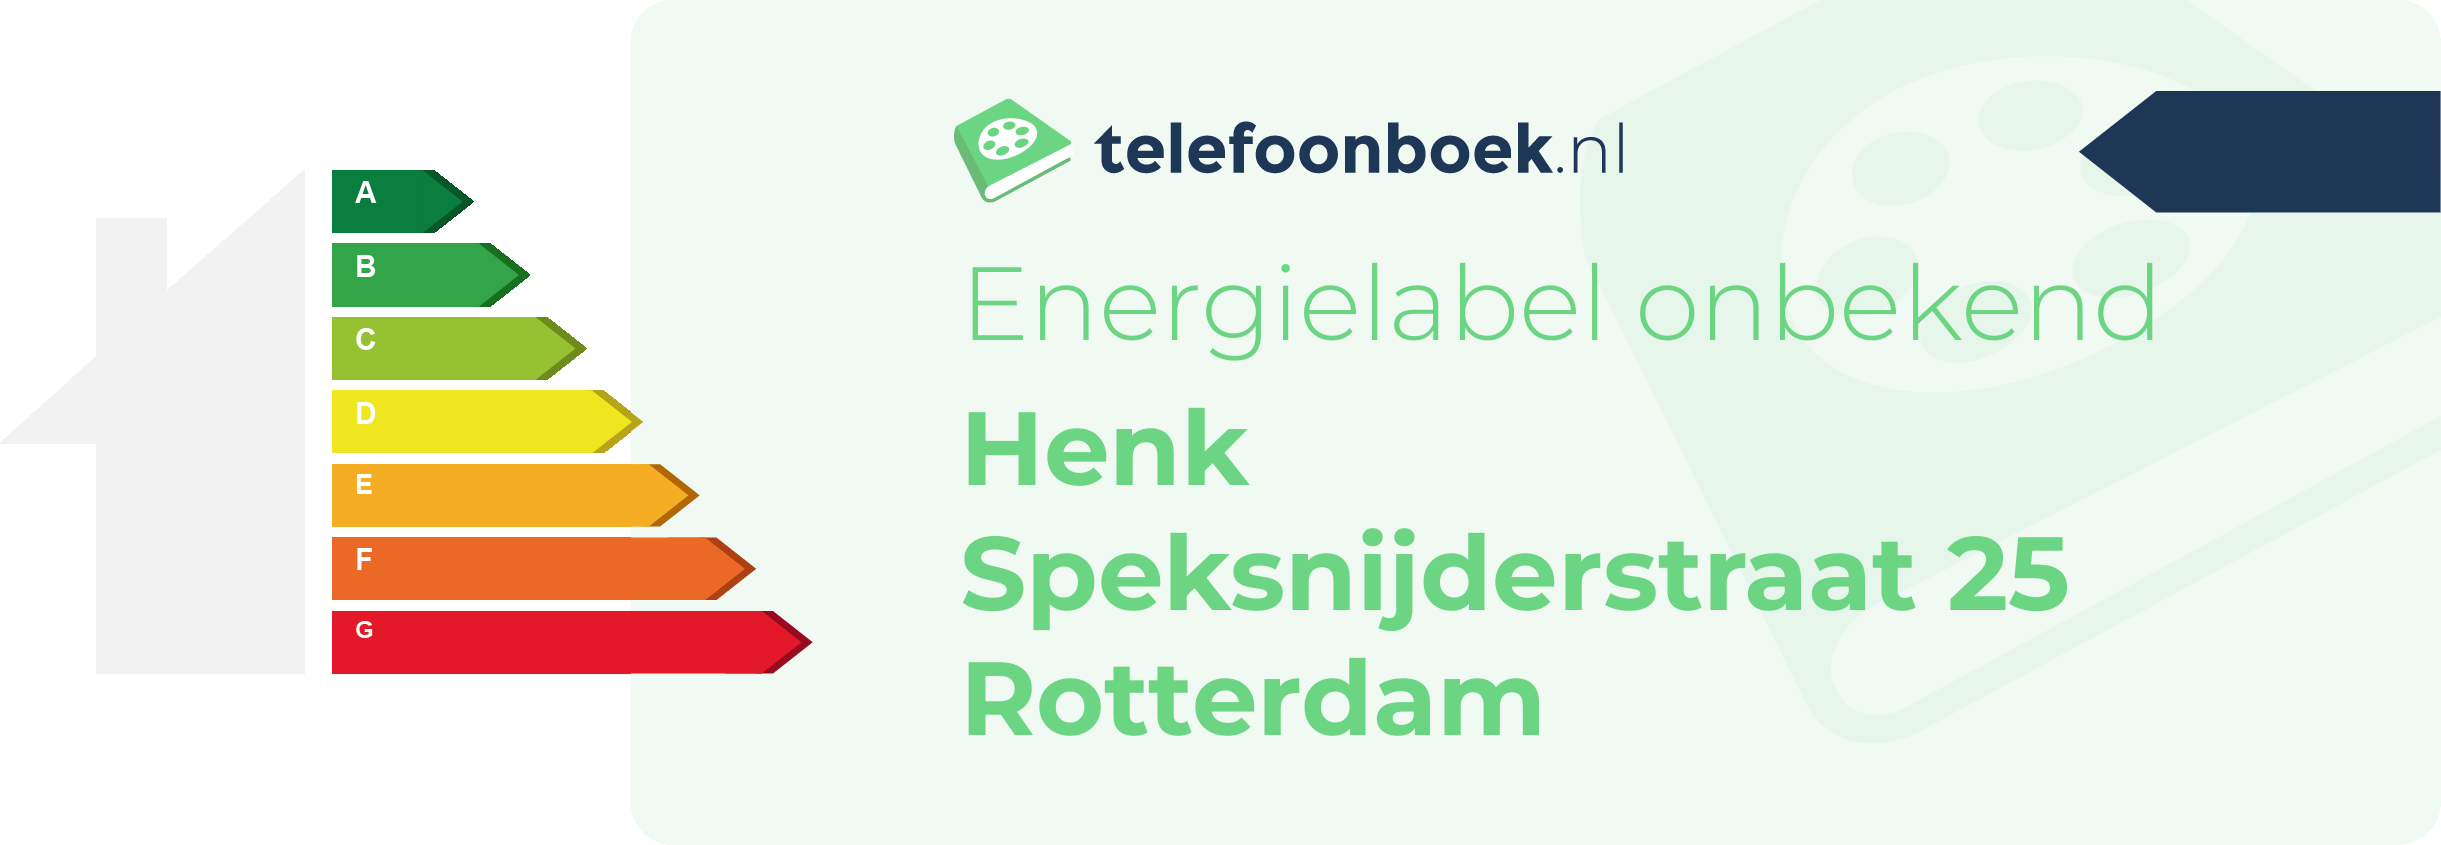 Energielabel Henk Speksnijderstraat 25 Rotterdam